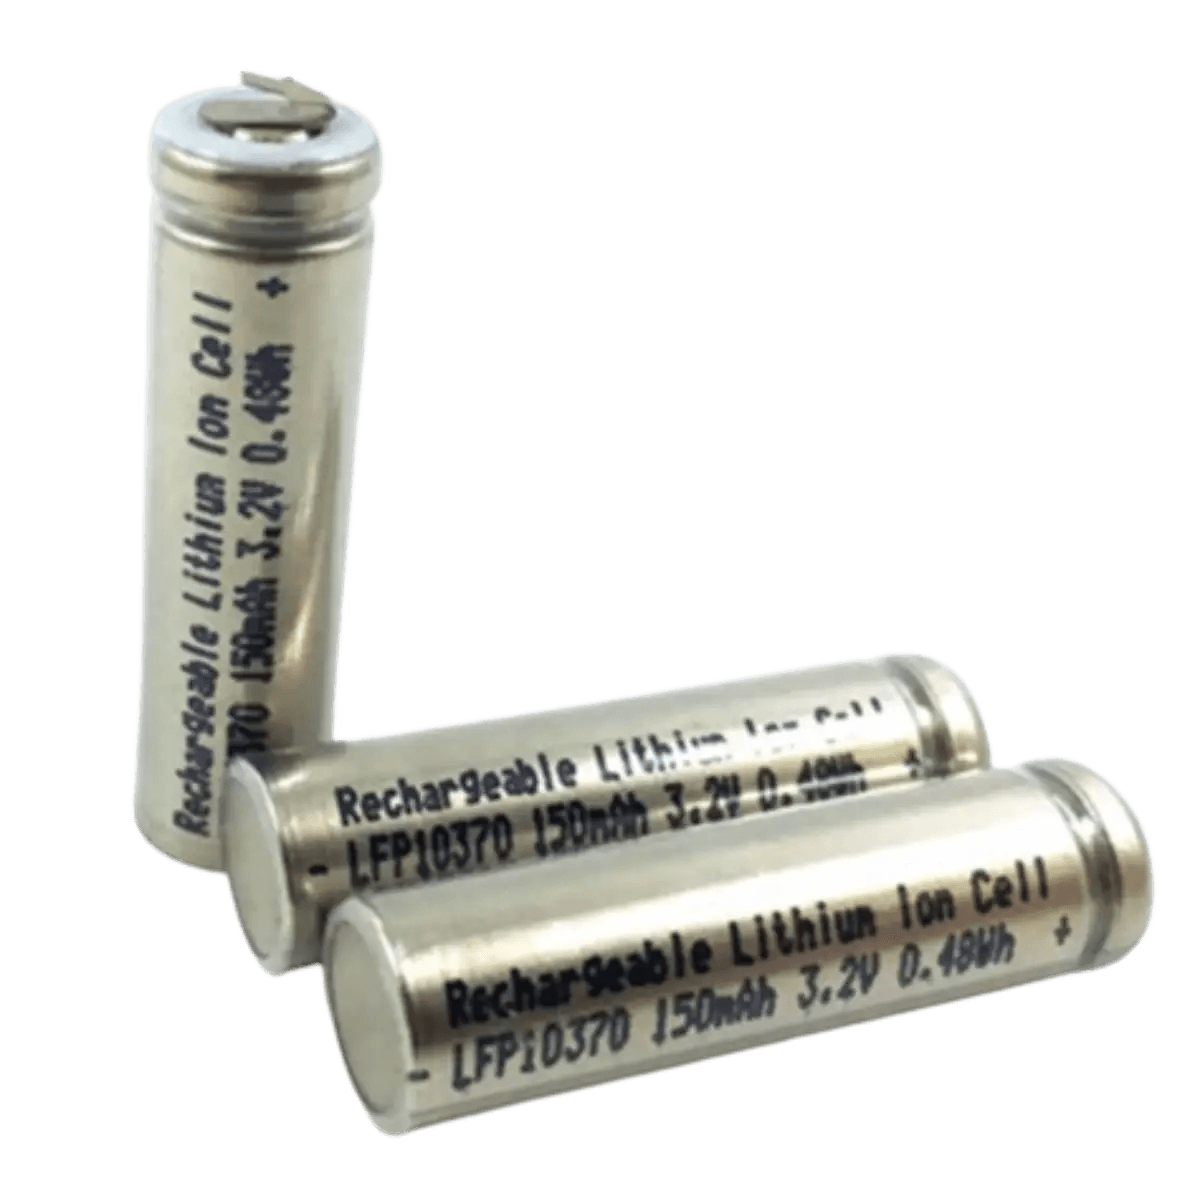 Batterie LiFePo4 10370 3.2 v 150mAh avec cosses